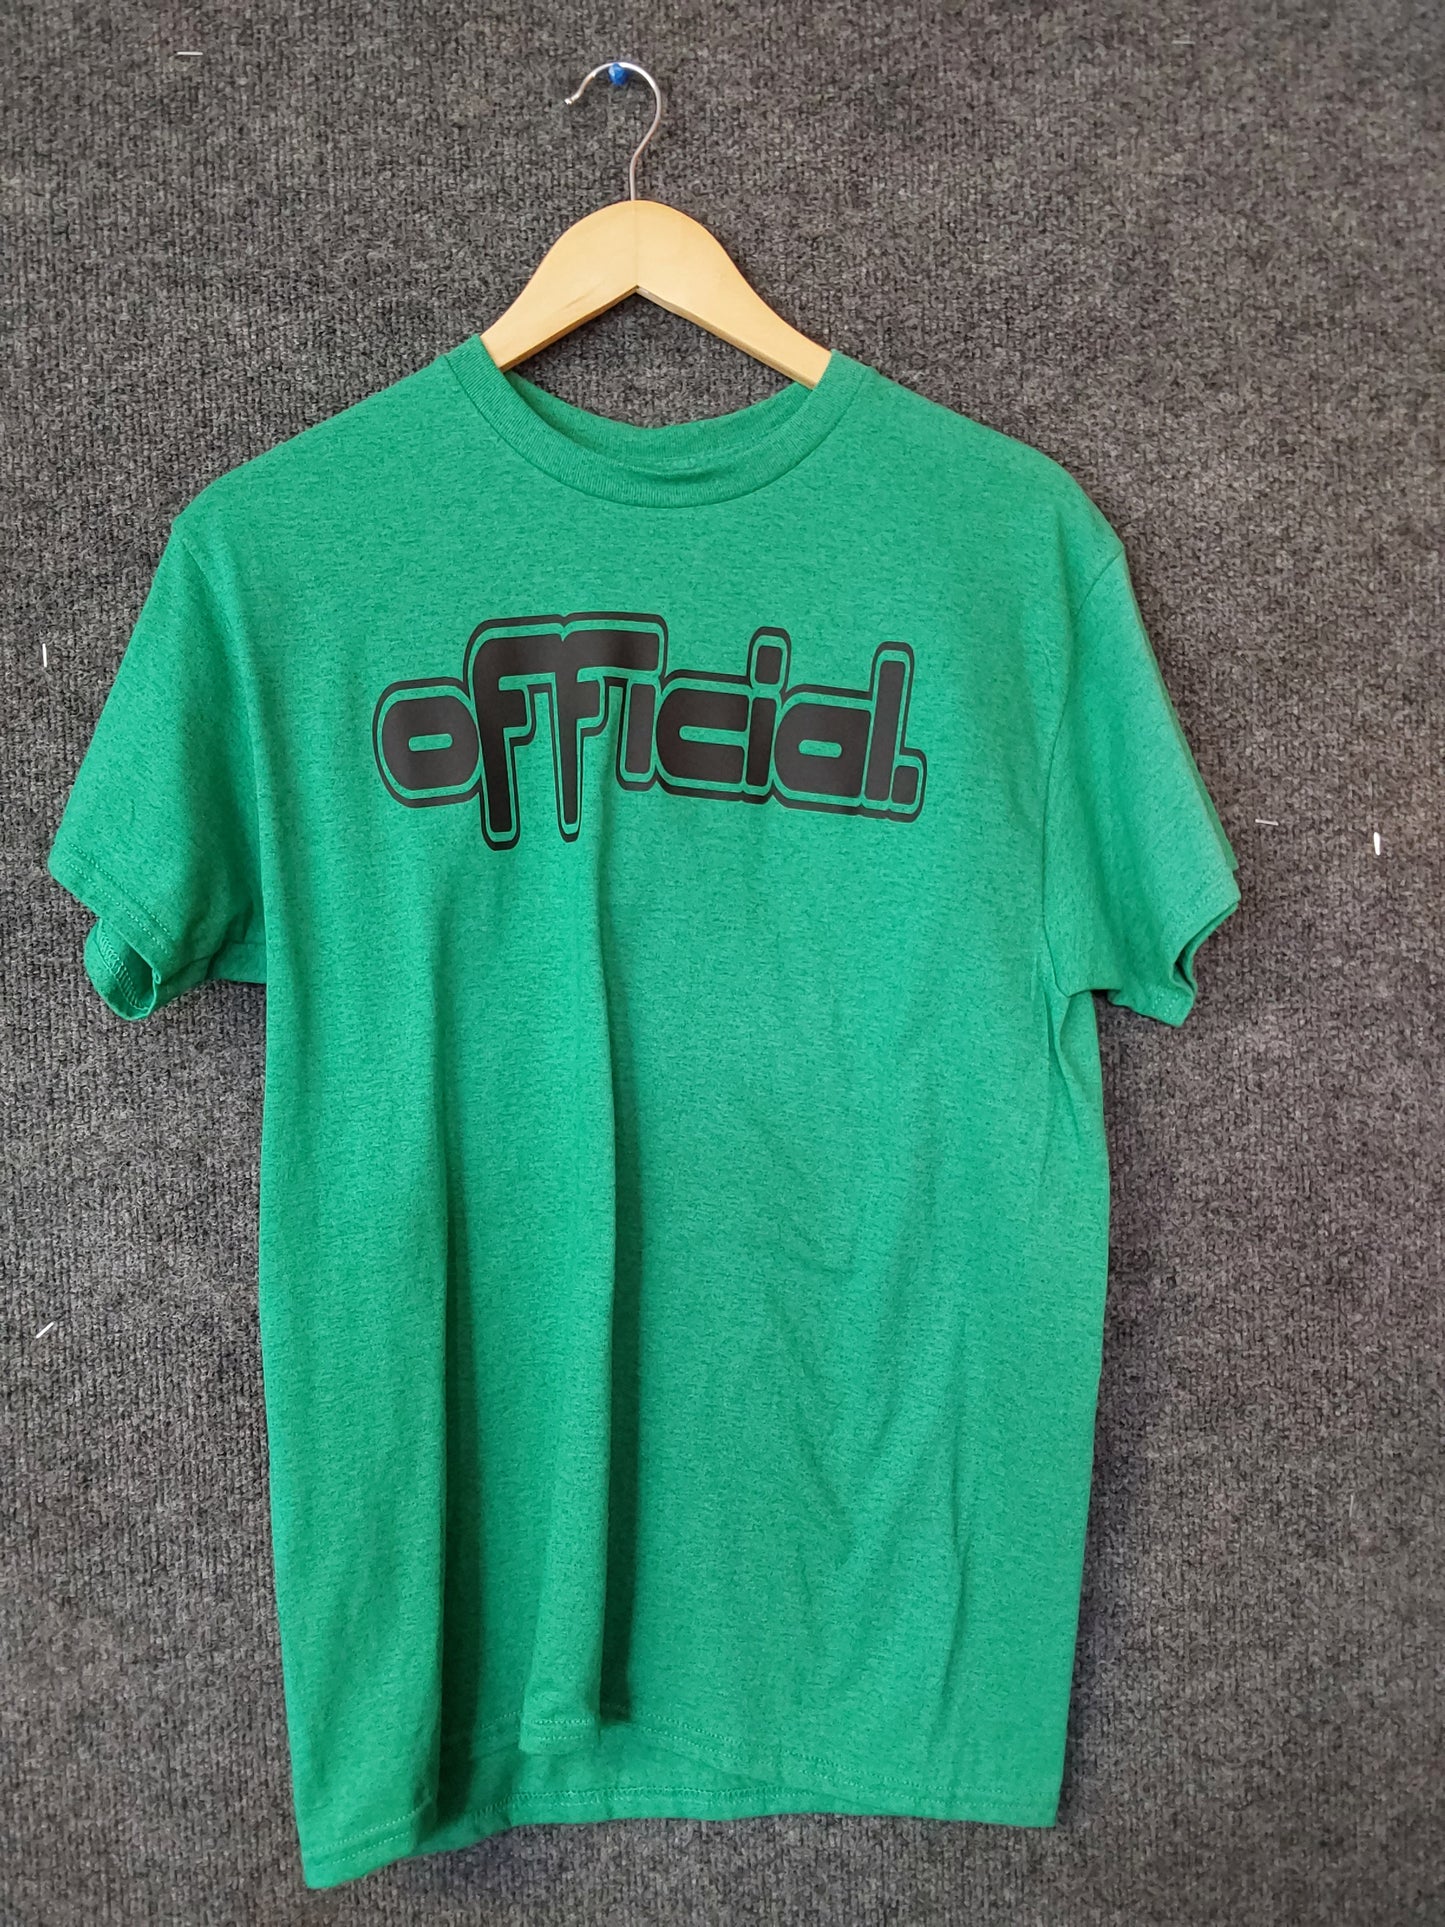 Official Green Dirty Jersey Fresh T-shirt